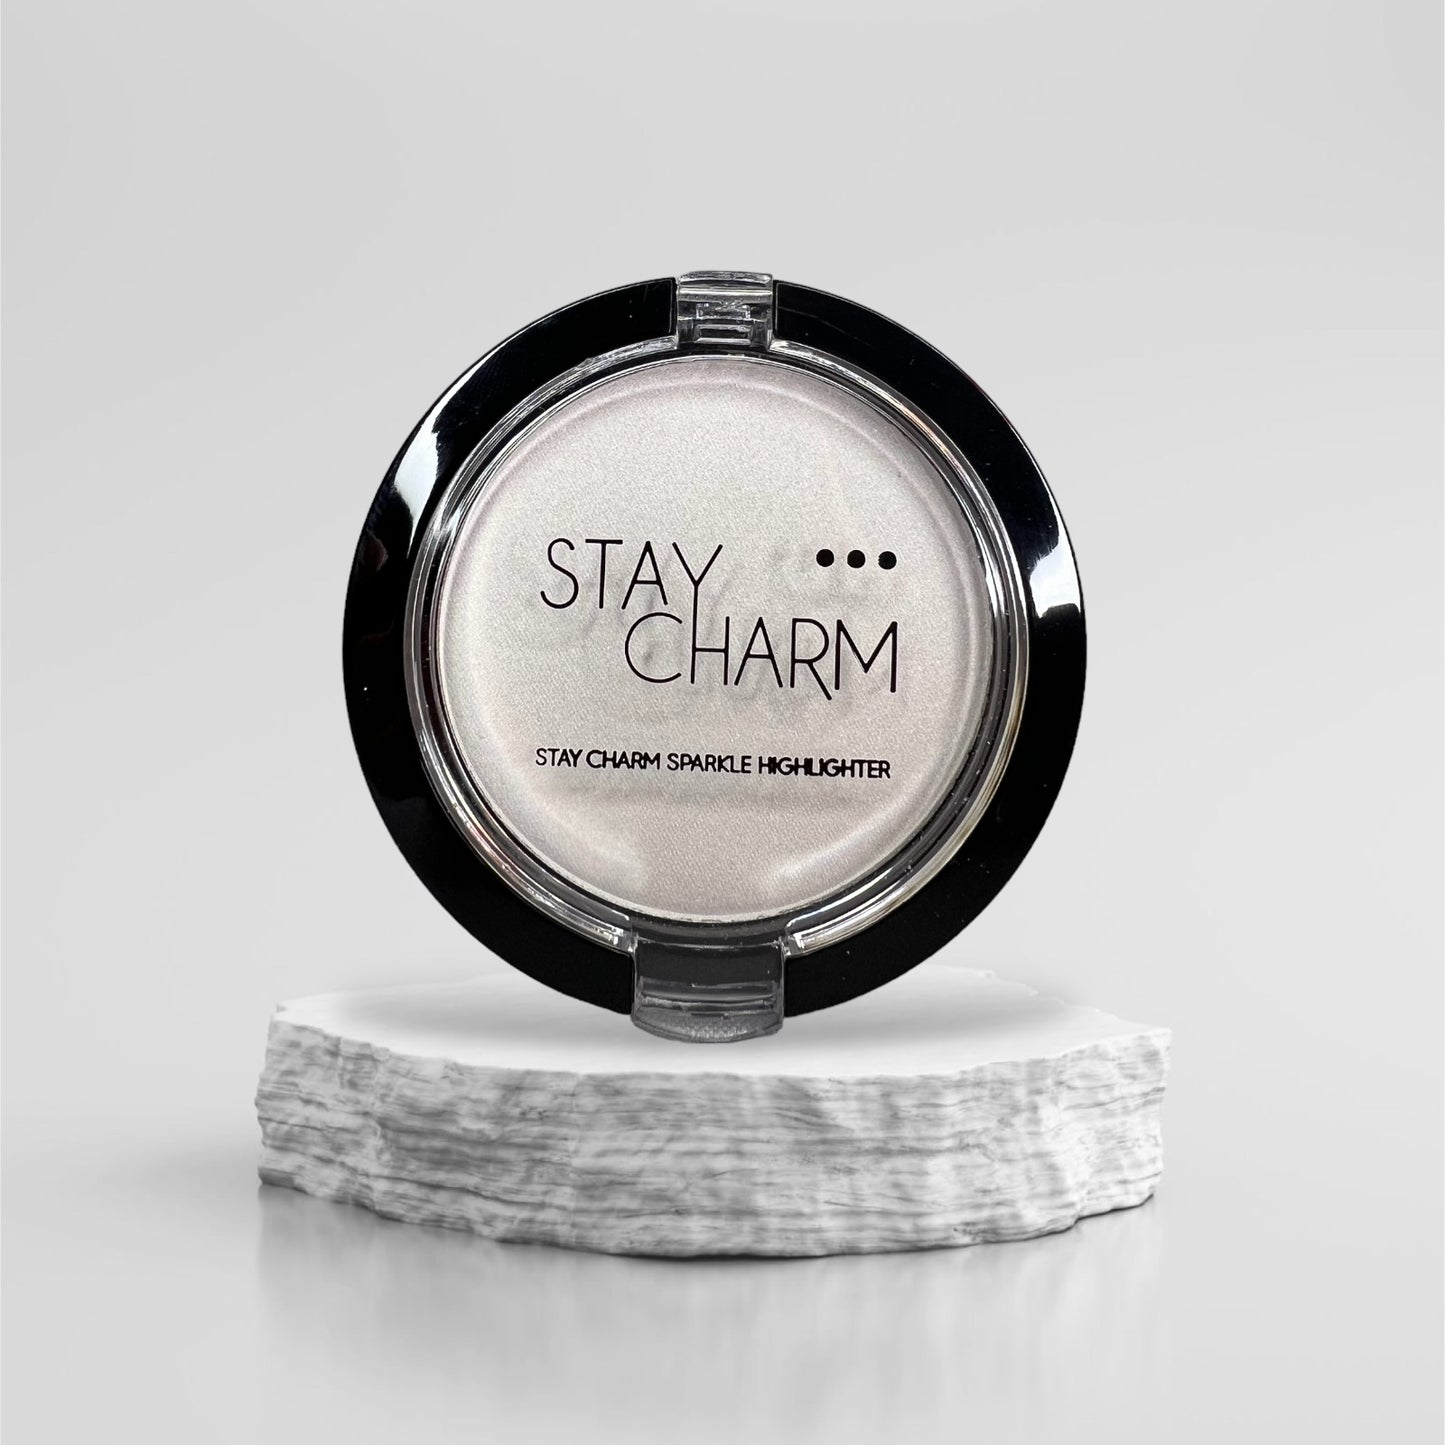 Stay Charm - Highlighterek